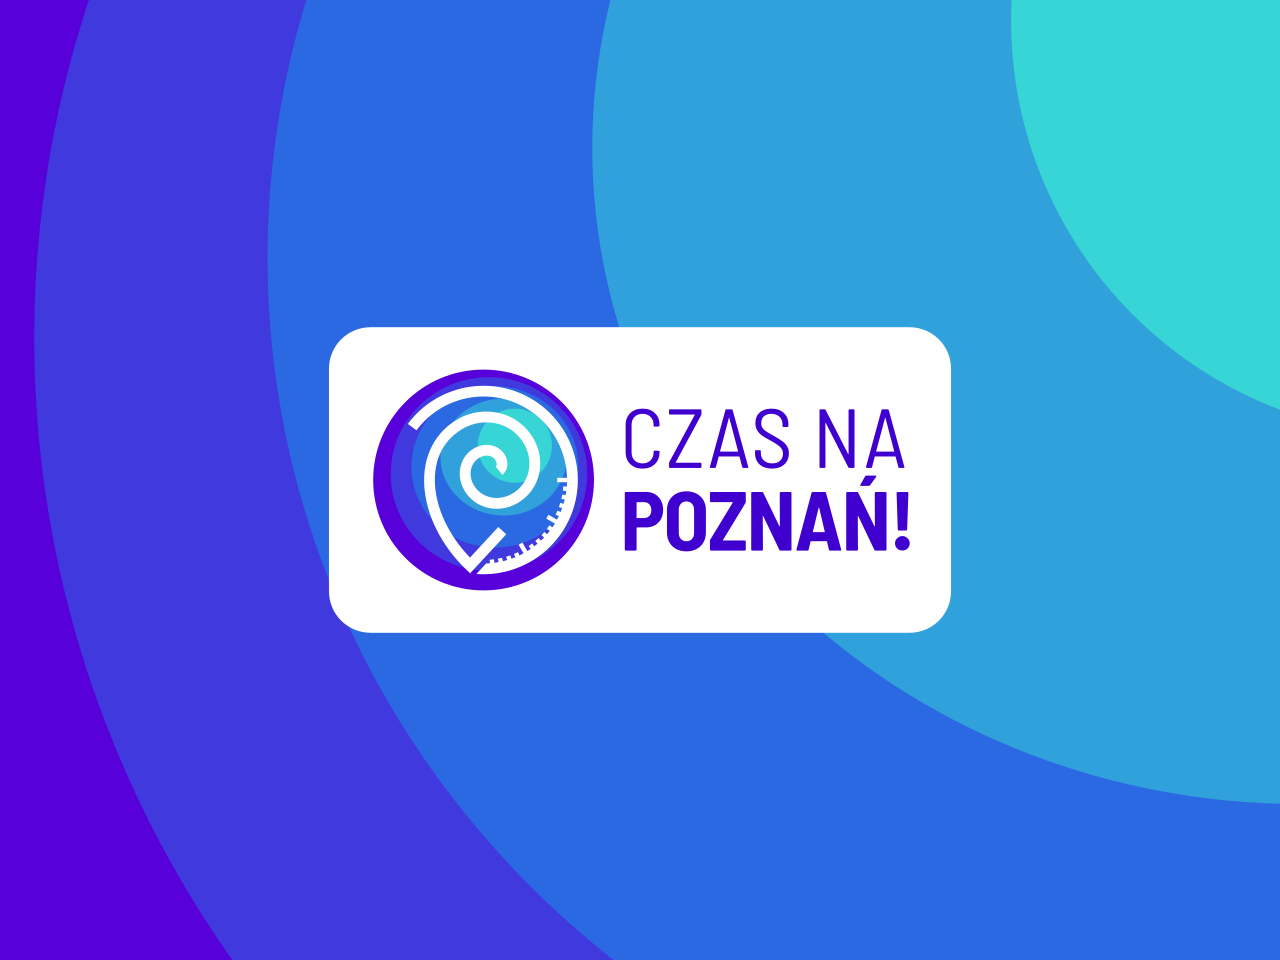 Czas na Poznań. Wiadomości Poznań, wydarzenia, polityka, inicjatywy, transport, mieszkańcy